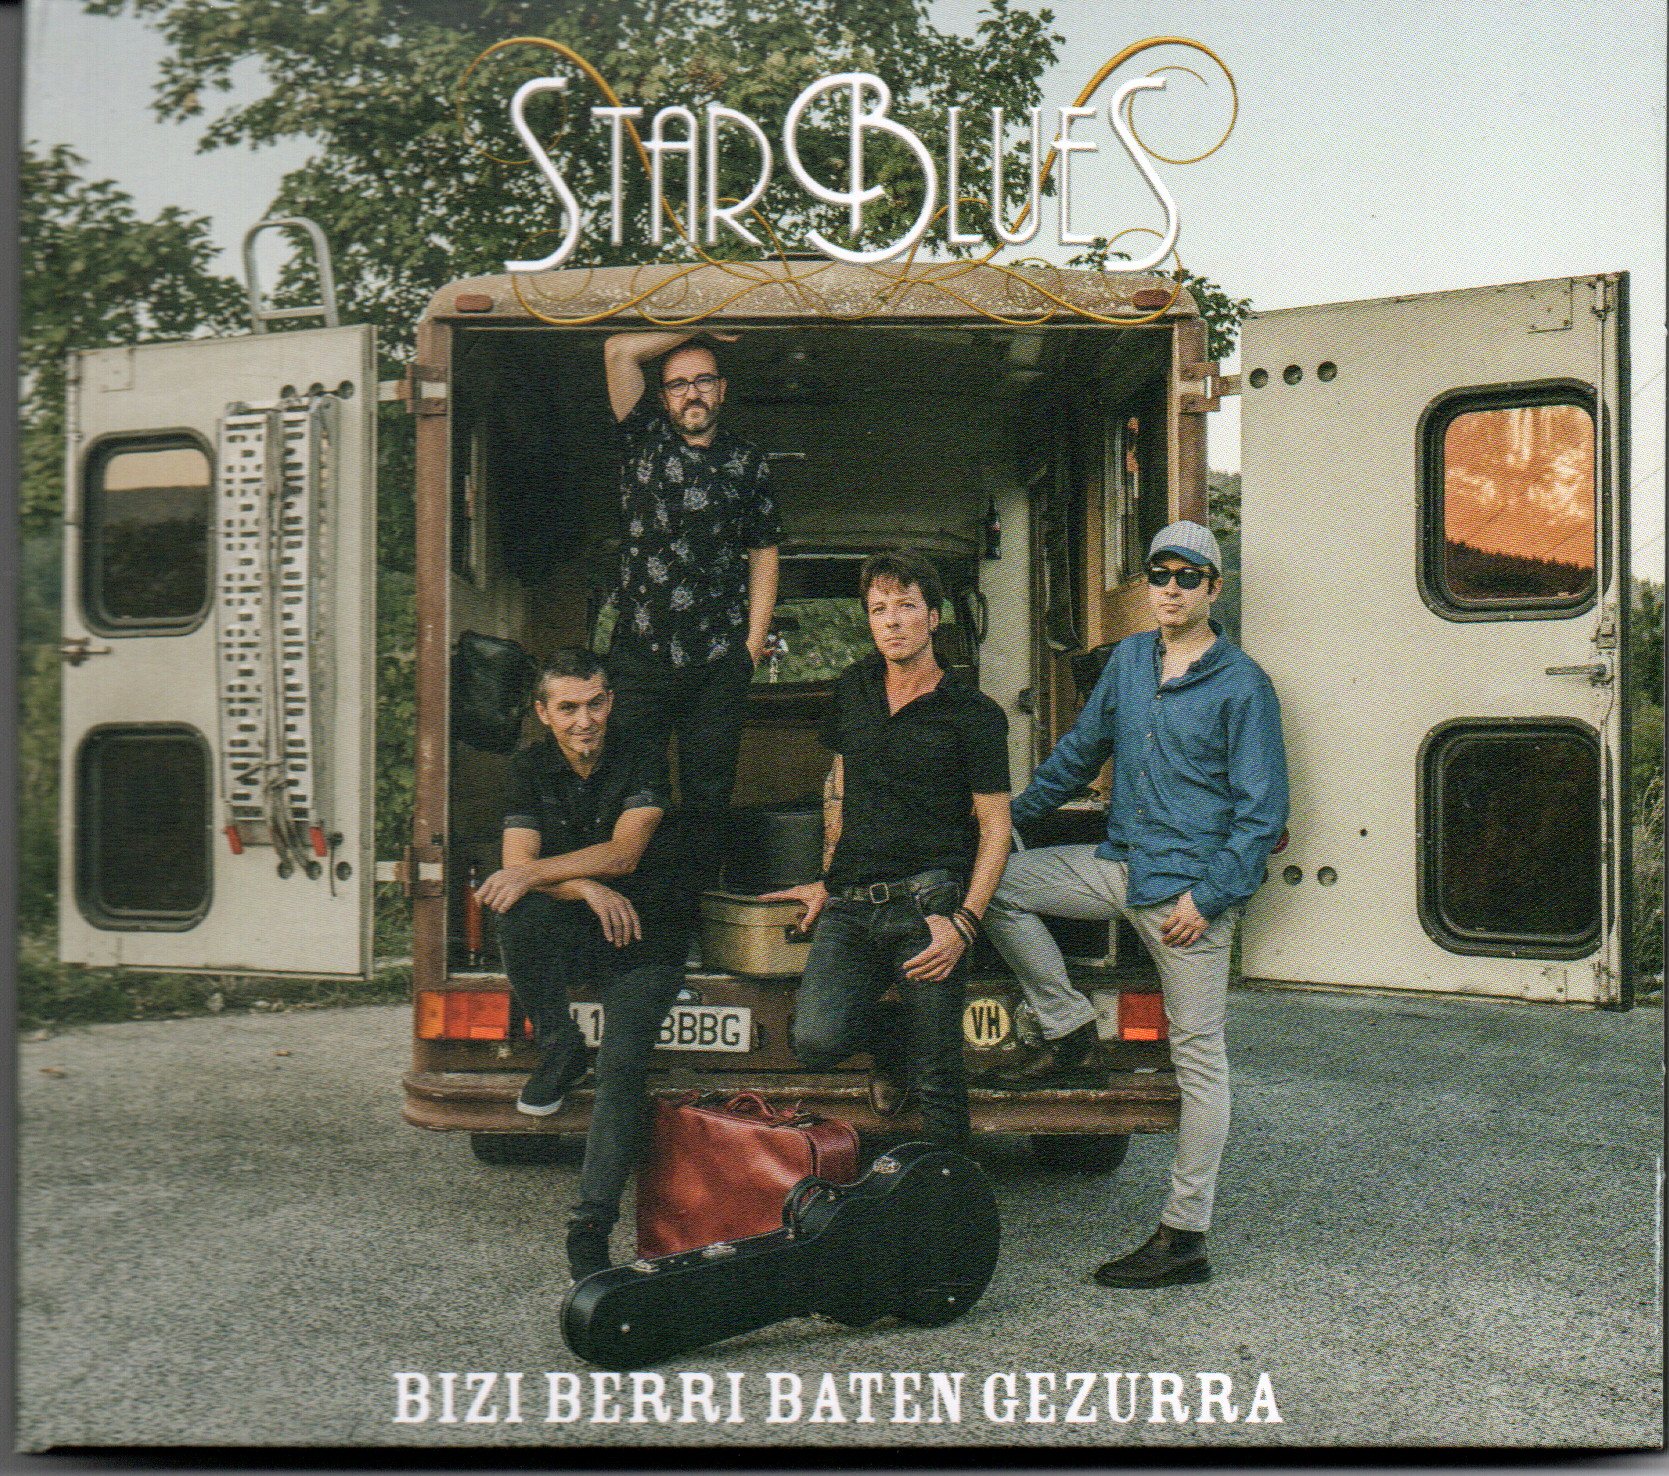 StarBlues "Bizi Berri Baten Gezurra"